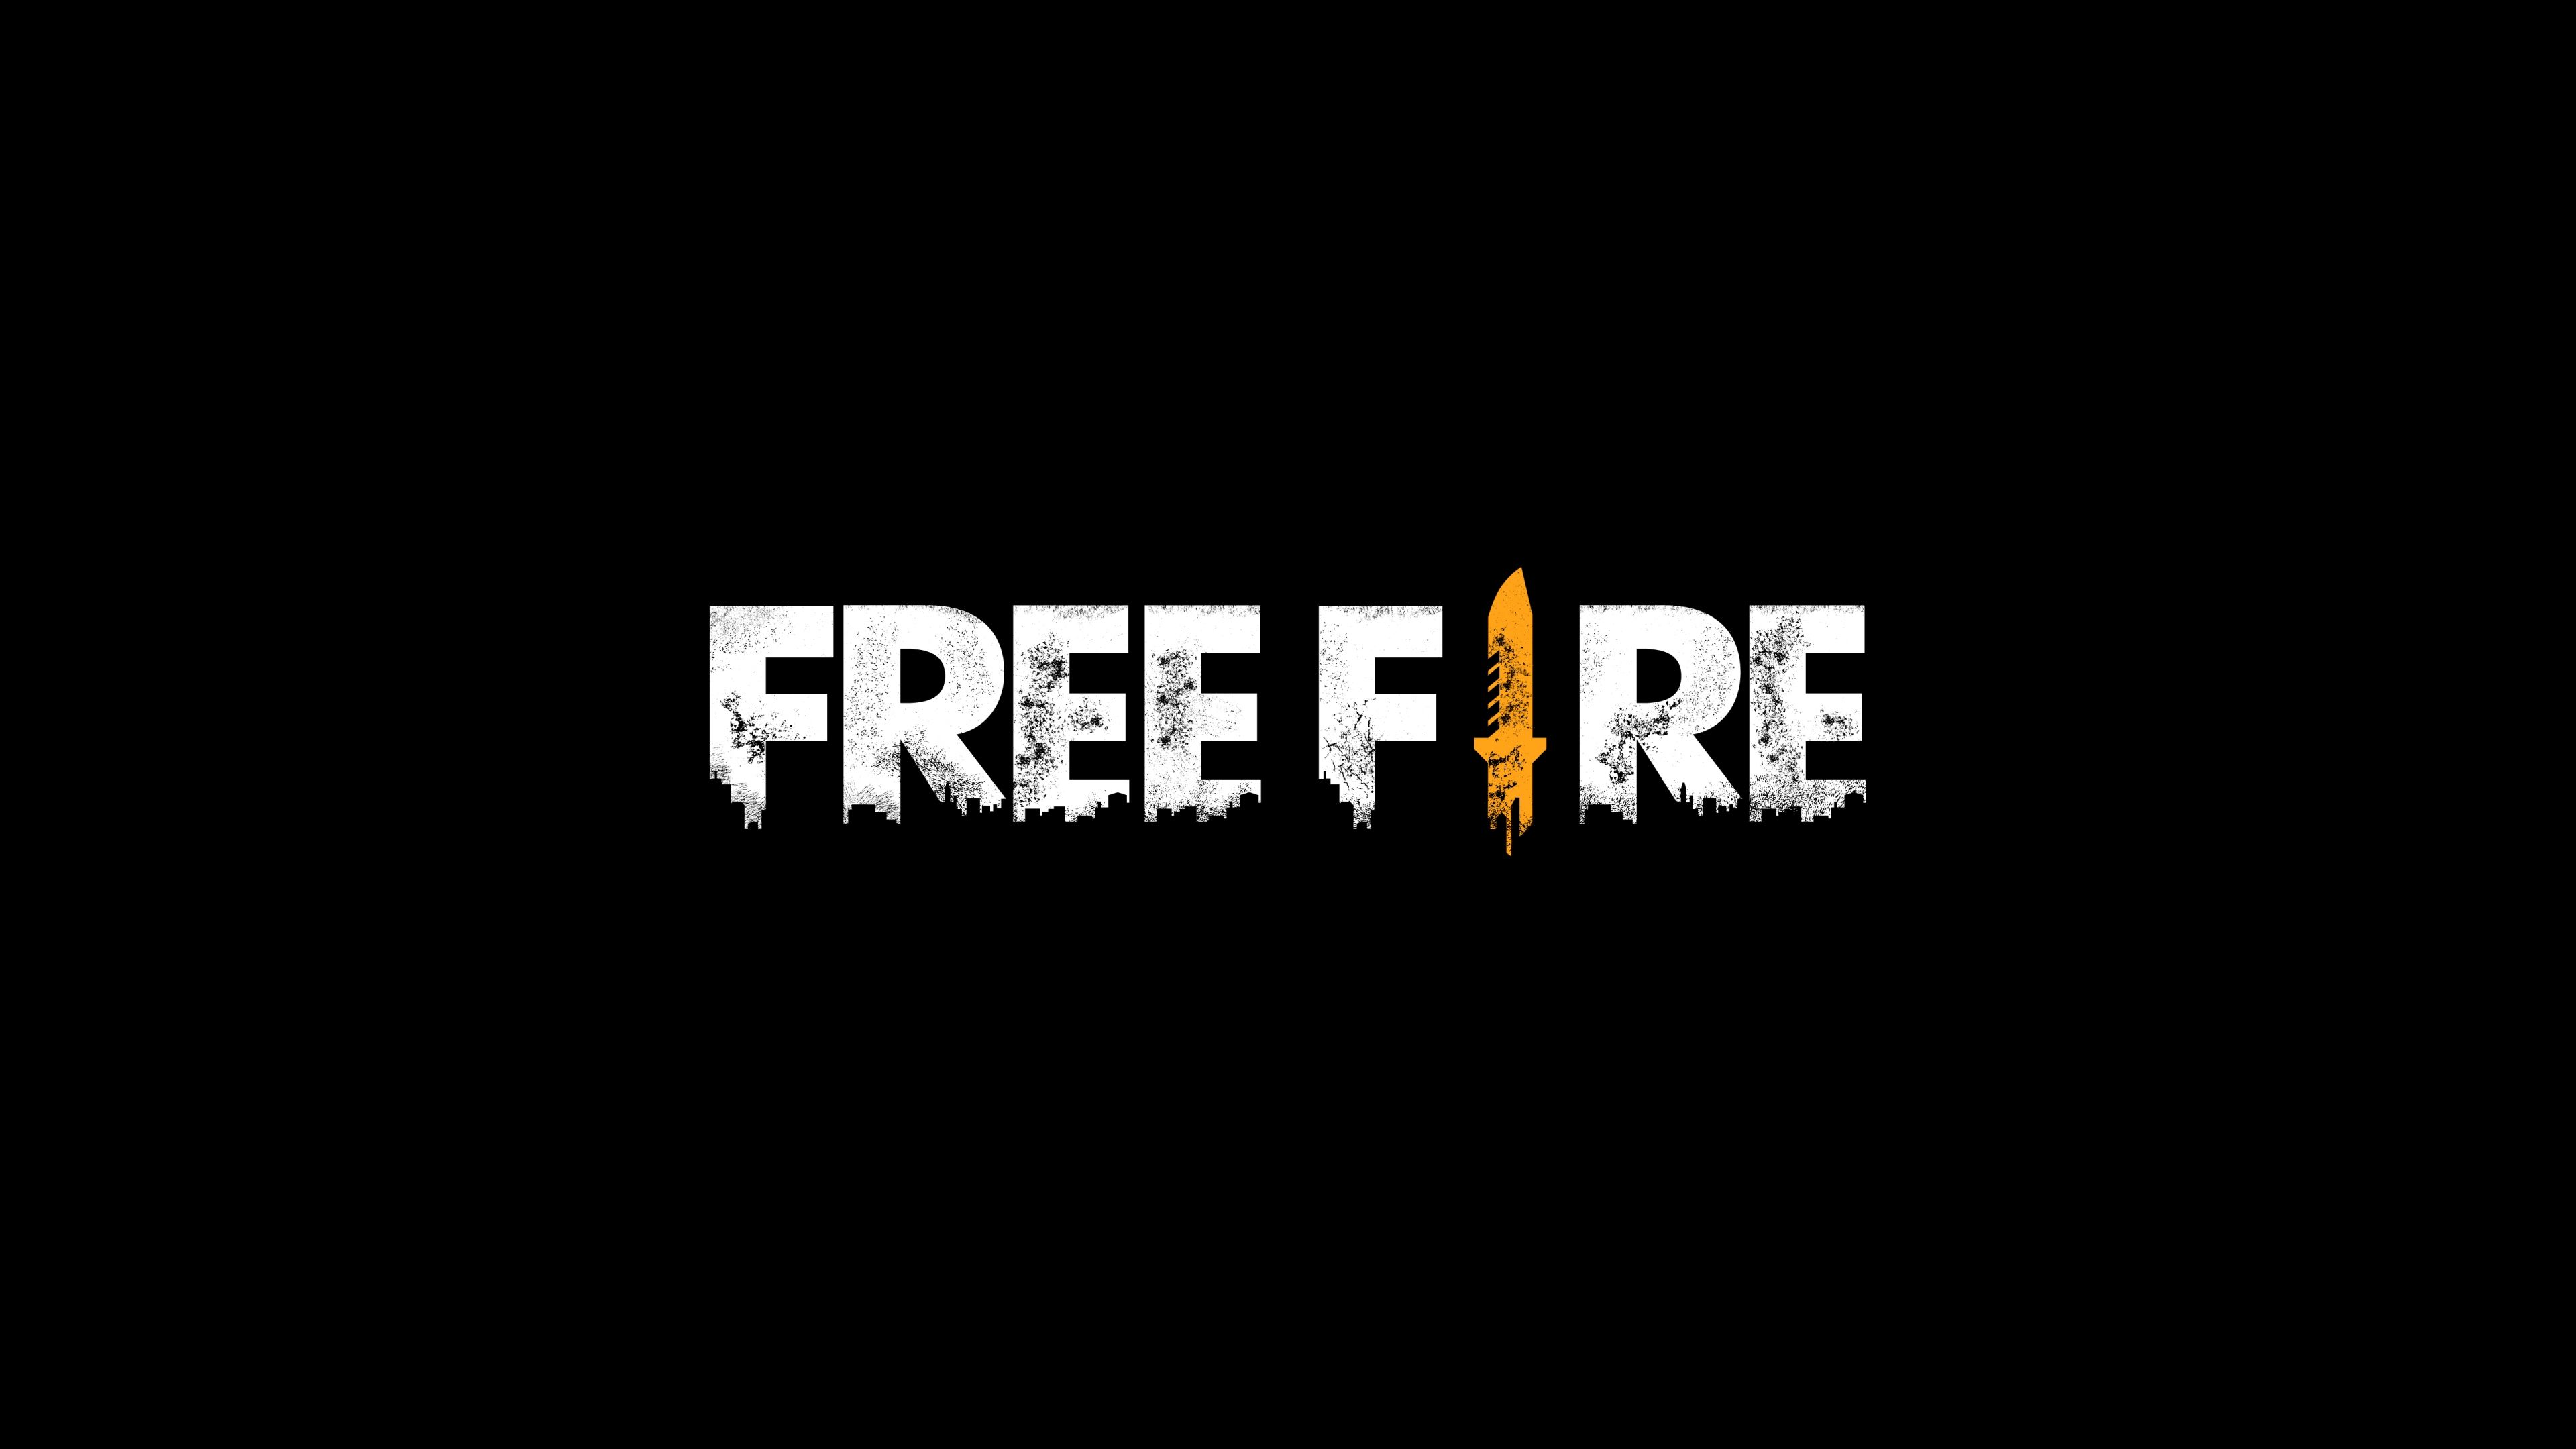 Free Fire Logo Wallpaper 5k Ultra HD